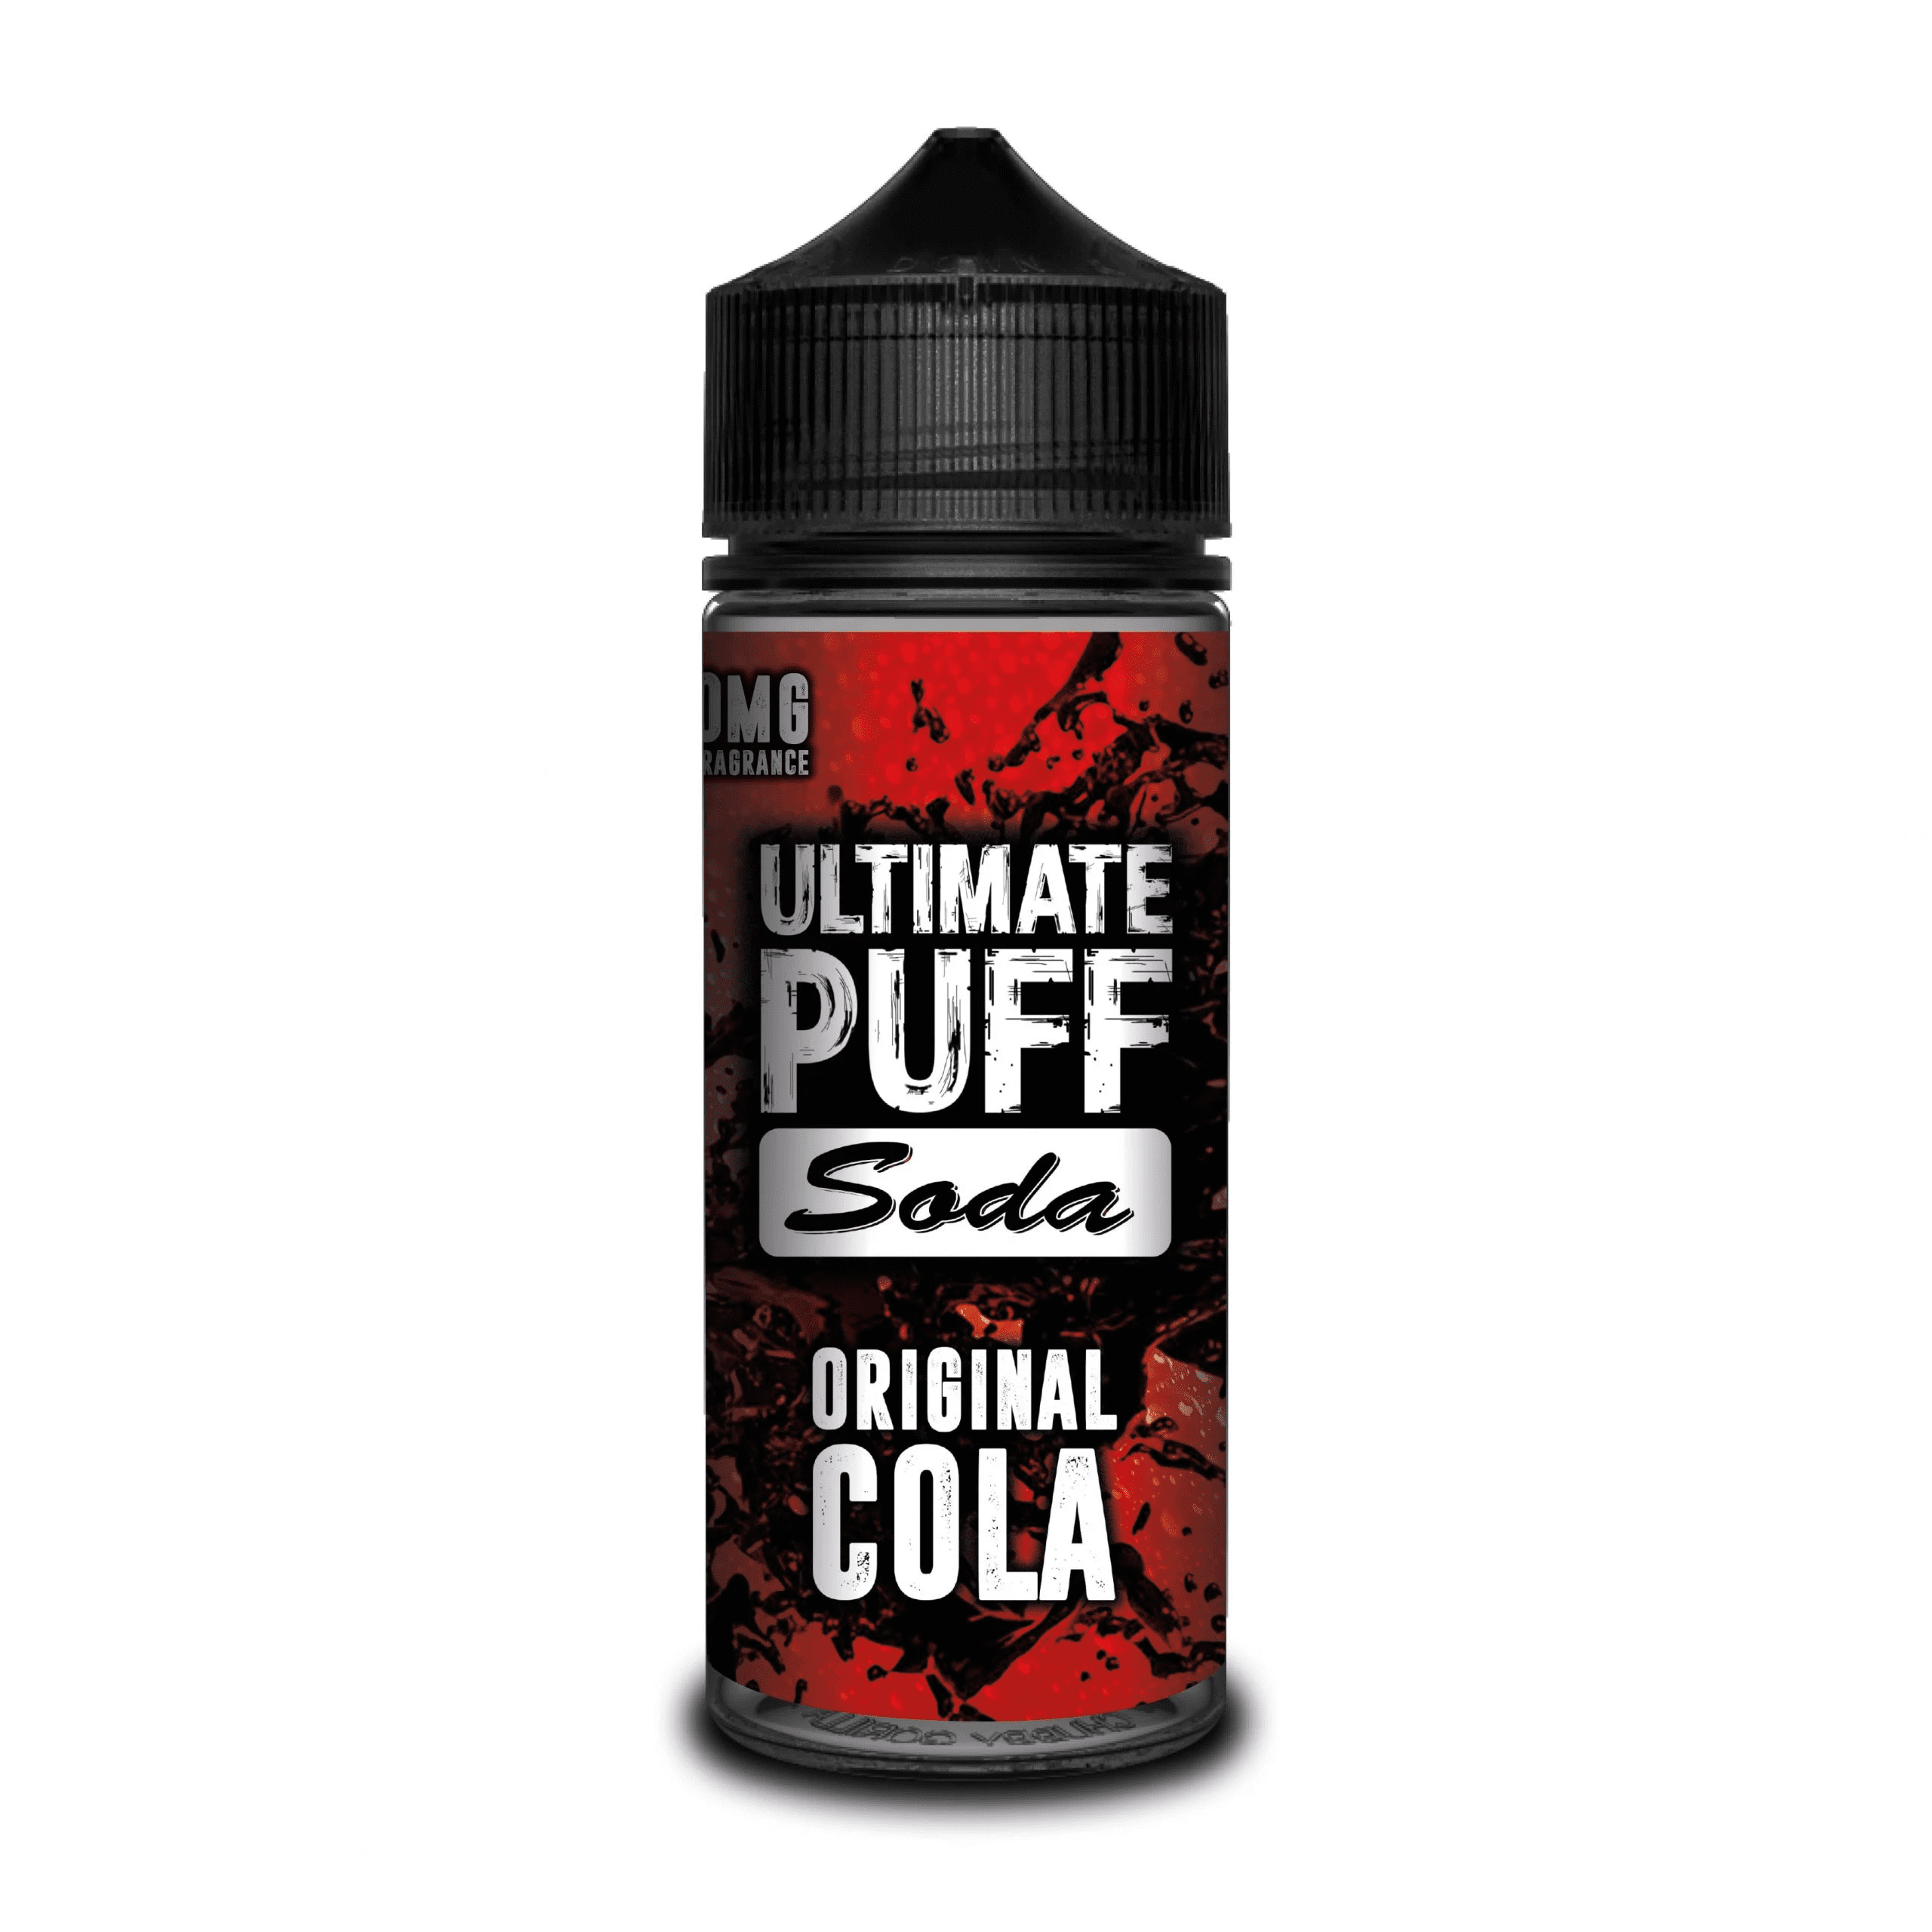 Ultimate Puff Soda - Original Cola - 100ml